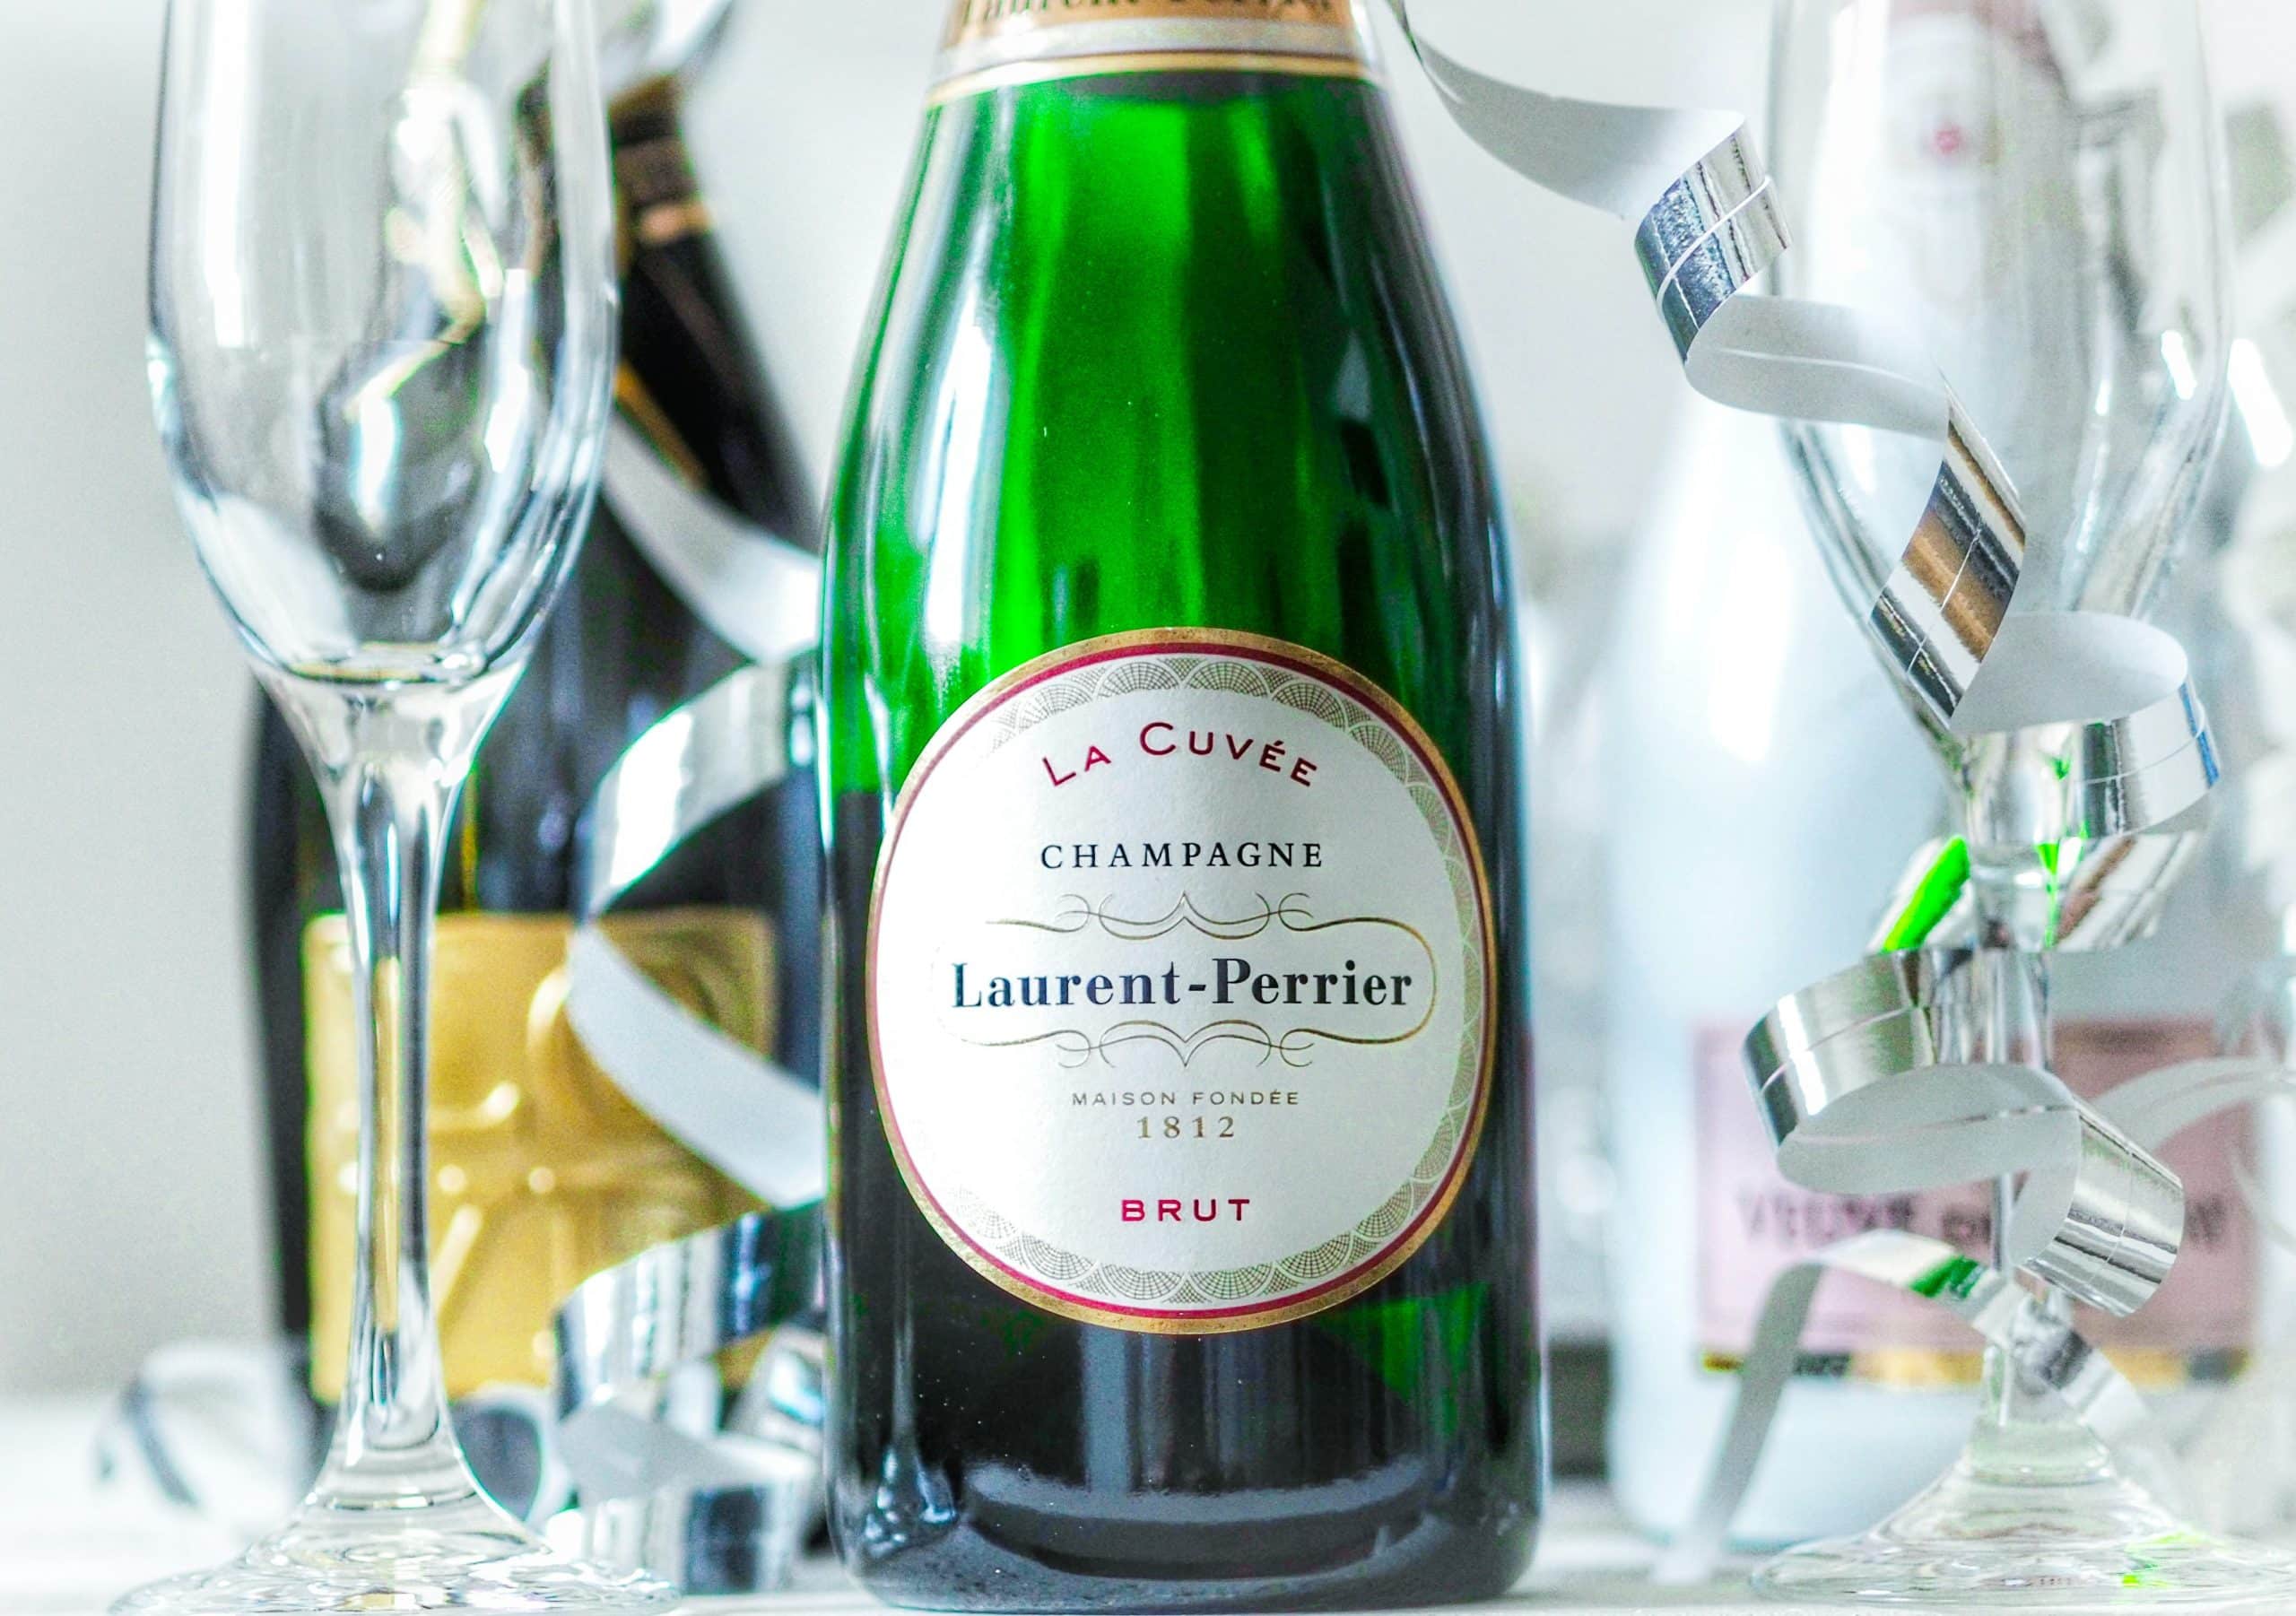 Bouteille de champagne de la marque Laurent Perrier